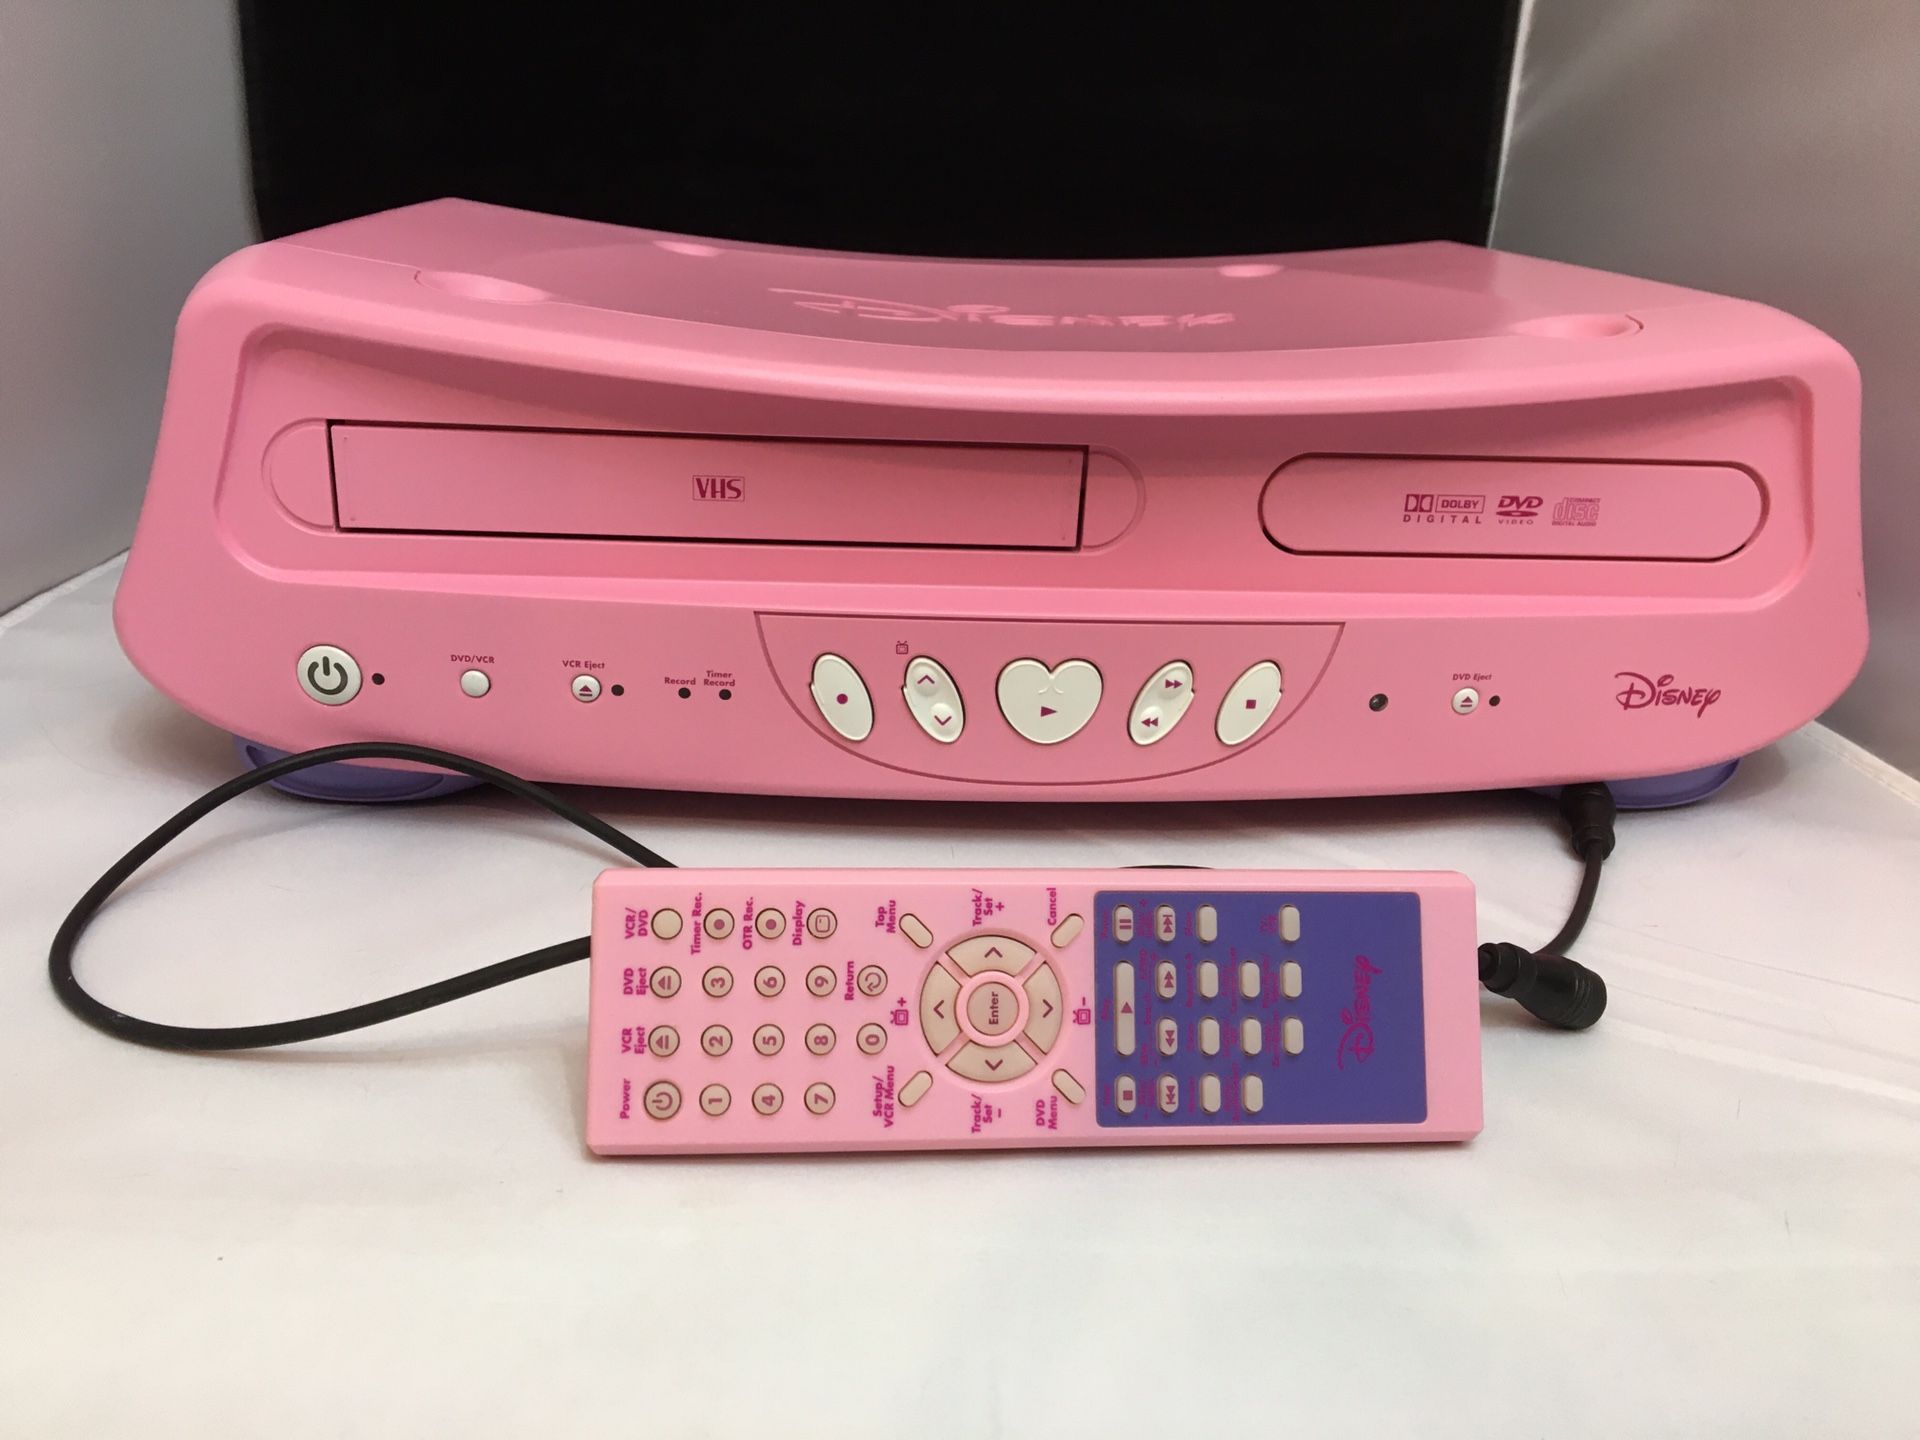 Disney Princess Pink DVD/VHS Combo Player Rare